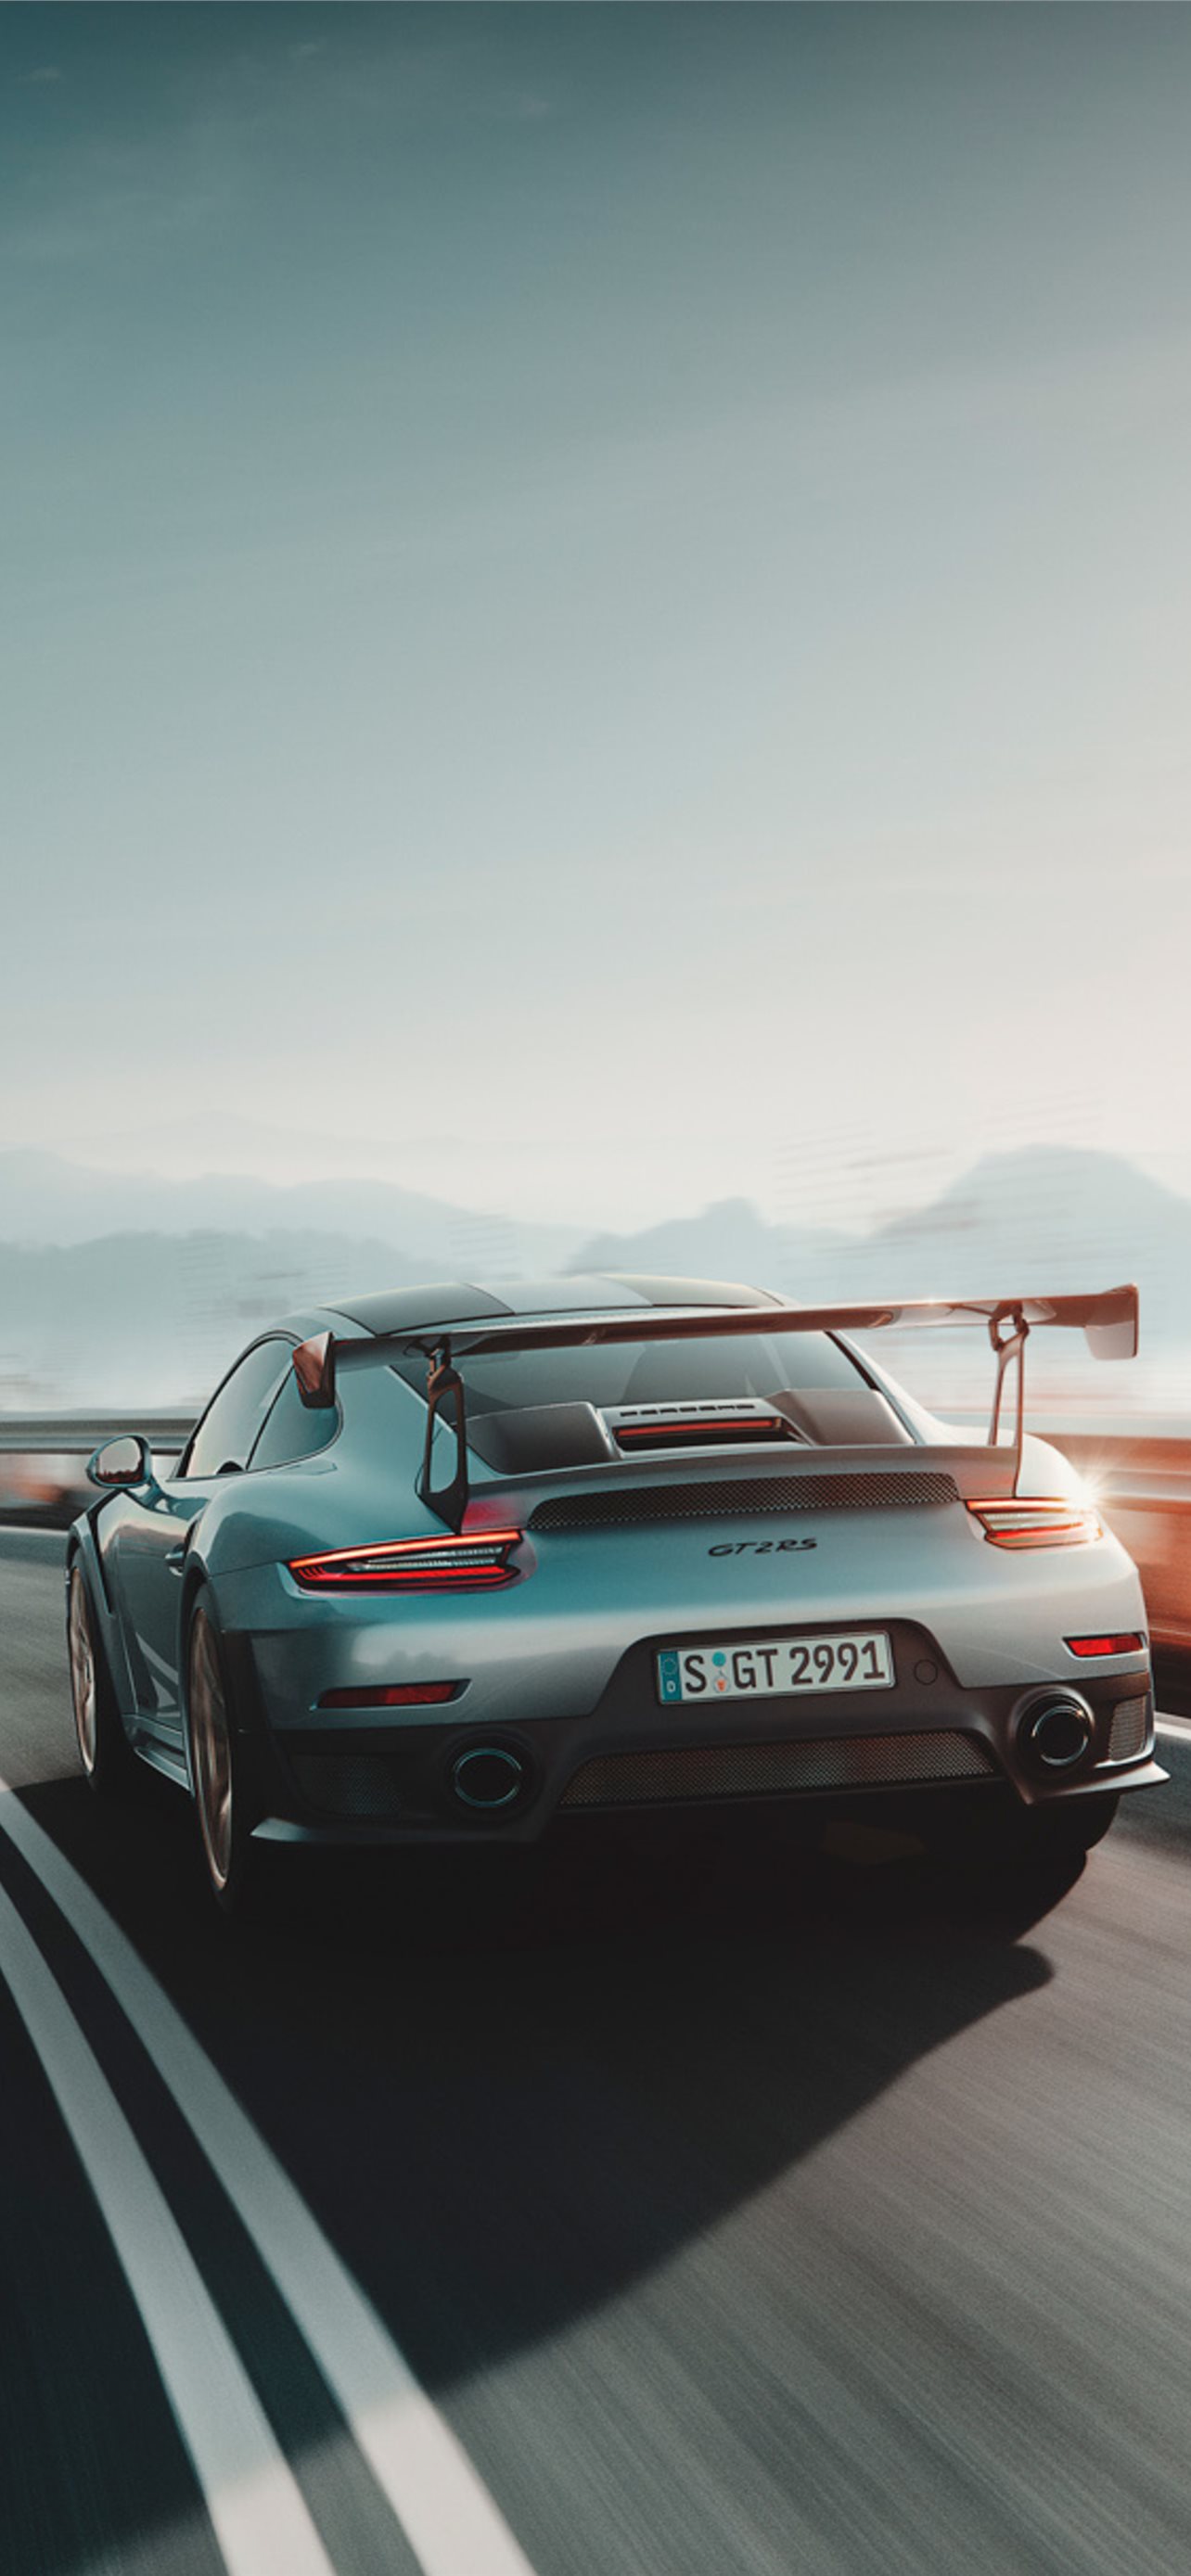 Hãy cùng trang trí chiếc điện thoại của bạn với một bức hình nền Porsche 911 độc đáo và đẳng cấp. Với một bộ sưu tập hình nền đa dạng và đầy cảm hứng, bạn sẽ luôn tìm thấy những bức tranh phù hợp với nhu cầu của mình. Với kích thước màn hình điện thoại của bạn, hãy tải xuống ngay chiếc hình nền Porsche 911 phù hợp và tận hưởng những thước phim đẹp.